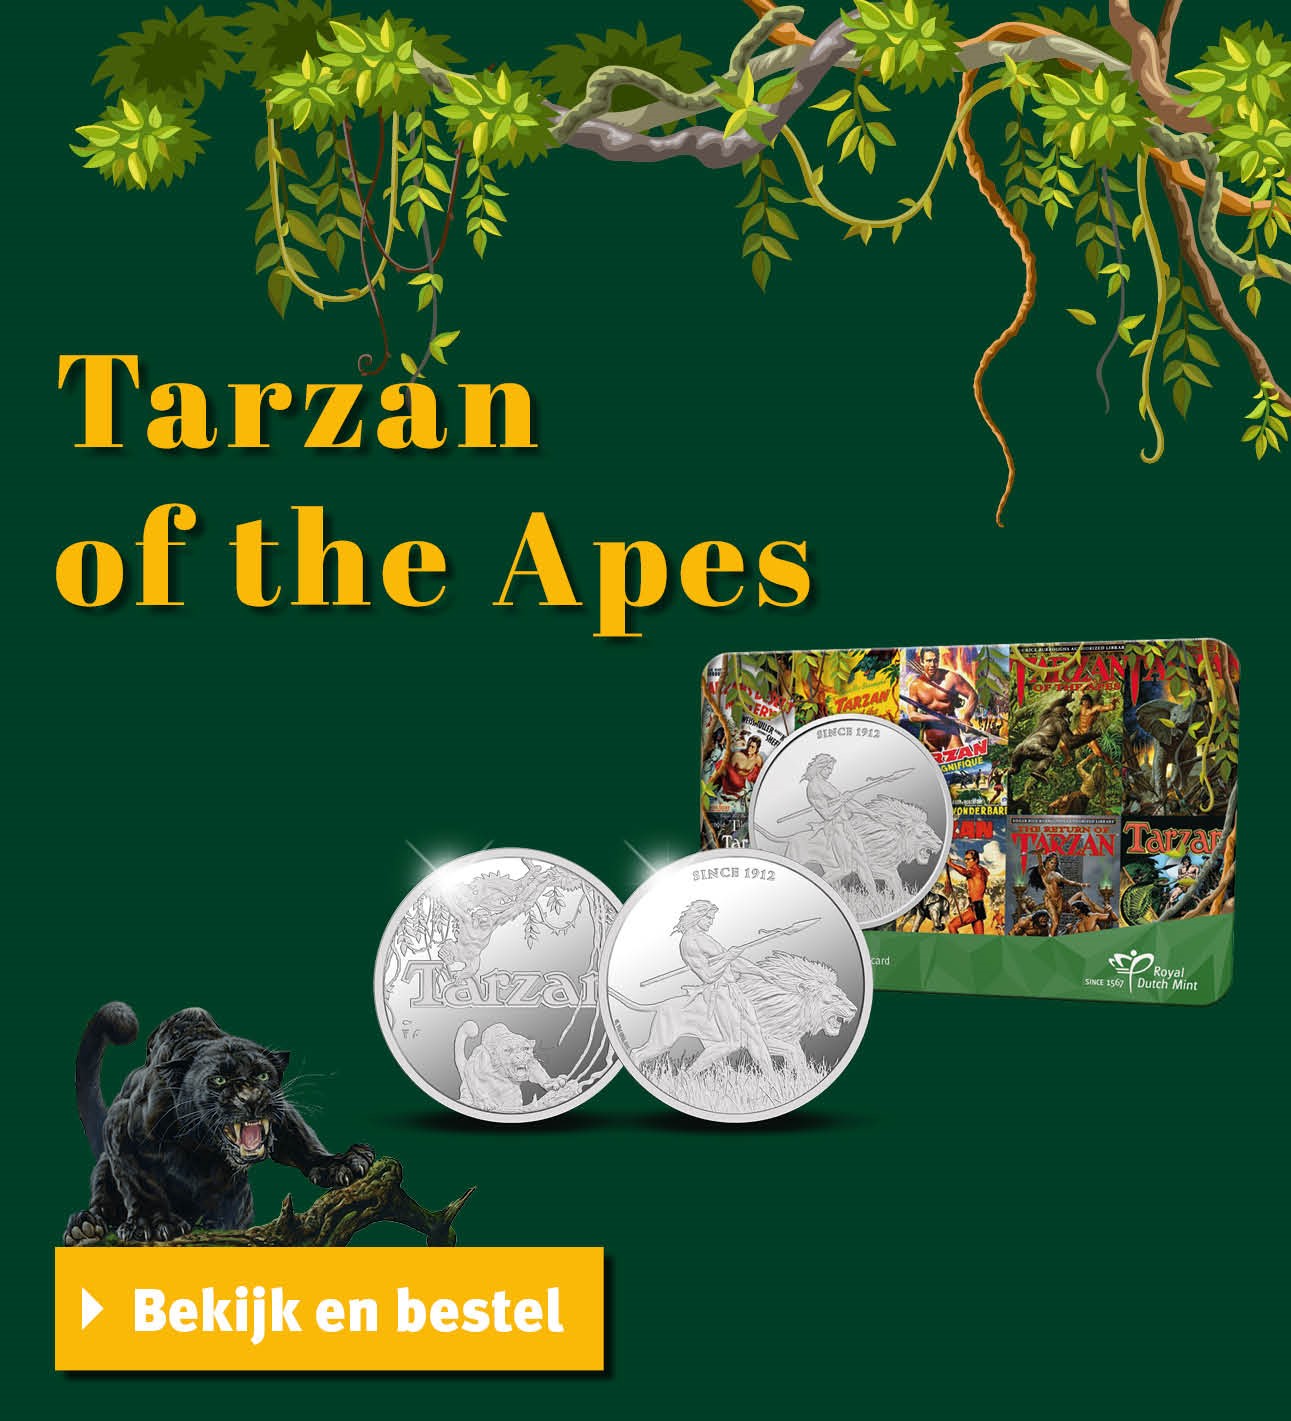 Bekijk en bestel: Tarzan of the Apes